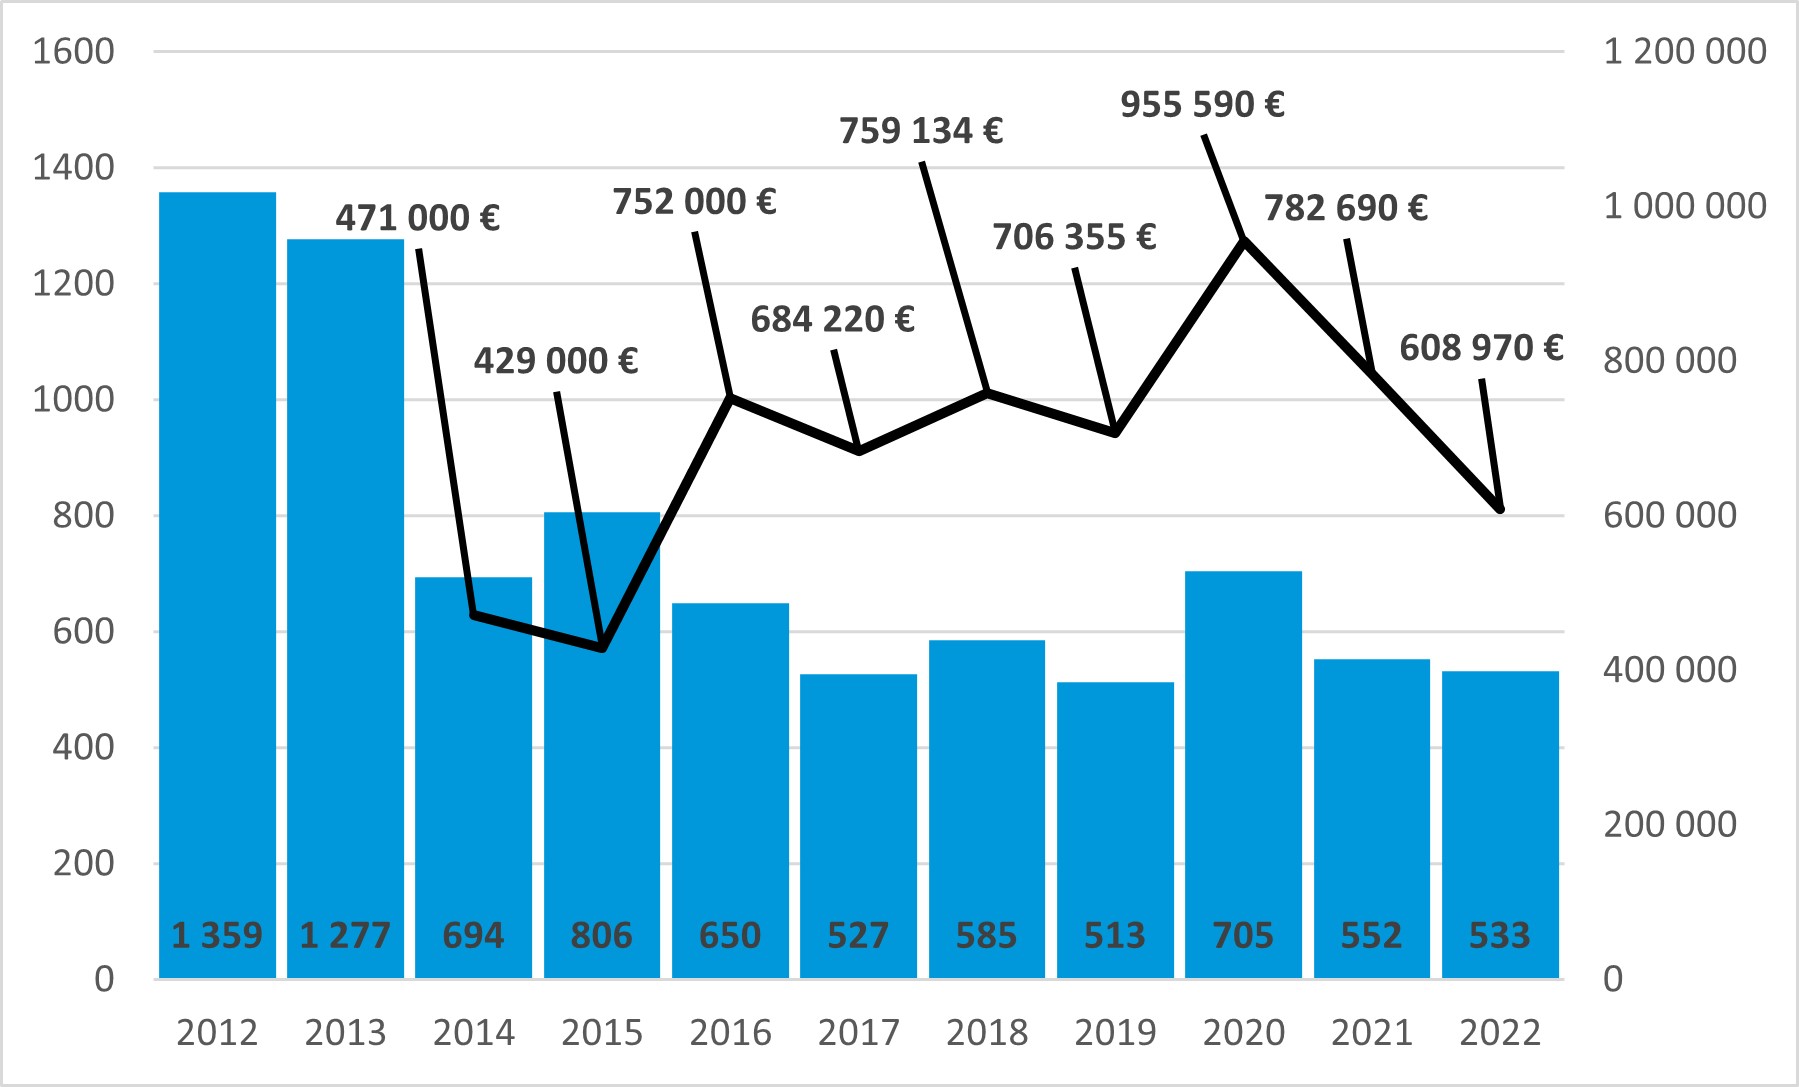 Tilasto ylikuormamaksuista.     Vuosien 2012 ja 20122 välillä annettujen ylikuormamaksujen kappalemäärä on vaihdellut 513 ja 1359 kappaleen välillä. Vähiten ylikuormamaksuja on vuonna 2019, 513 kappaletta ja eniten vuonna 2012, 1359 kappaletta. Rahamääräistä tietoa saadaan vuodesta 2014 lähtien, josta lähtien tuomittu kokonaisrahamäärä on ollut pienimmillään vuonna 2015, jolloin määrä oli 429000 euroa ja suurimmillaan vuonna 2020, jolloin määrä oli 955590 euroa. Vuonna 2022 ylikuormamaksuja annettiin 533 kappaletta ja 608970 euroa.